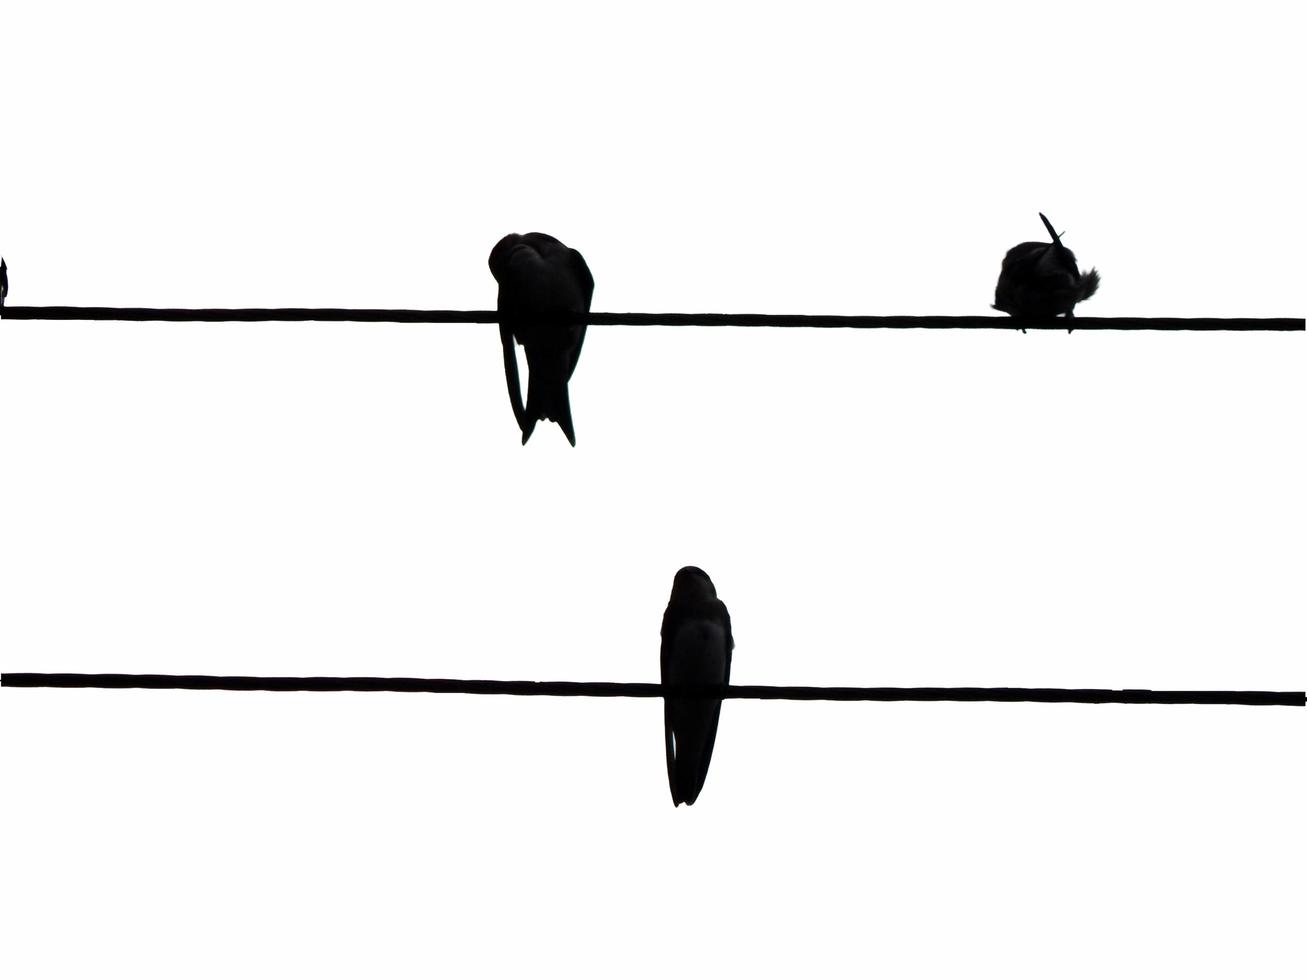 Vögel sitzen auf elektrischen Leitungen foto